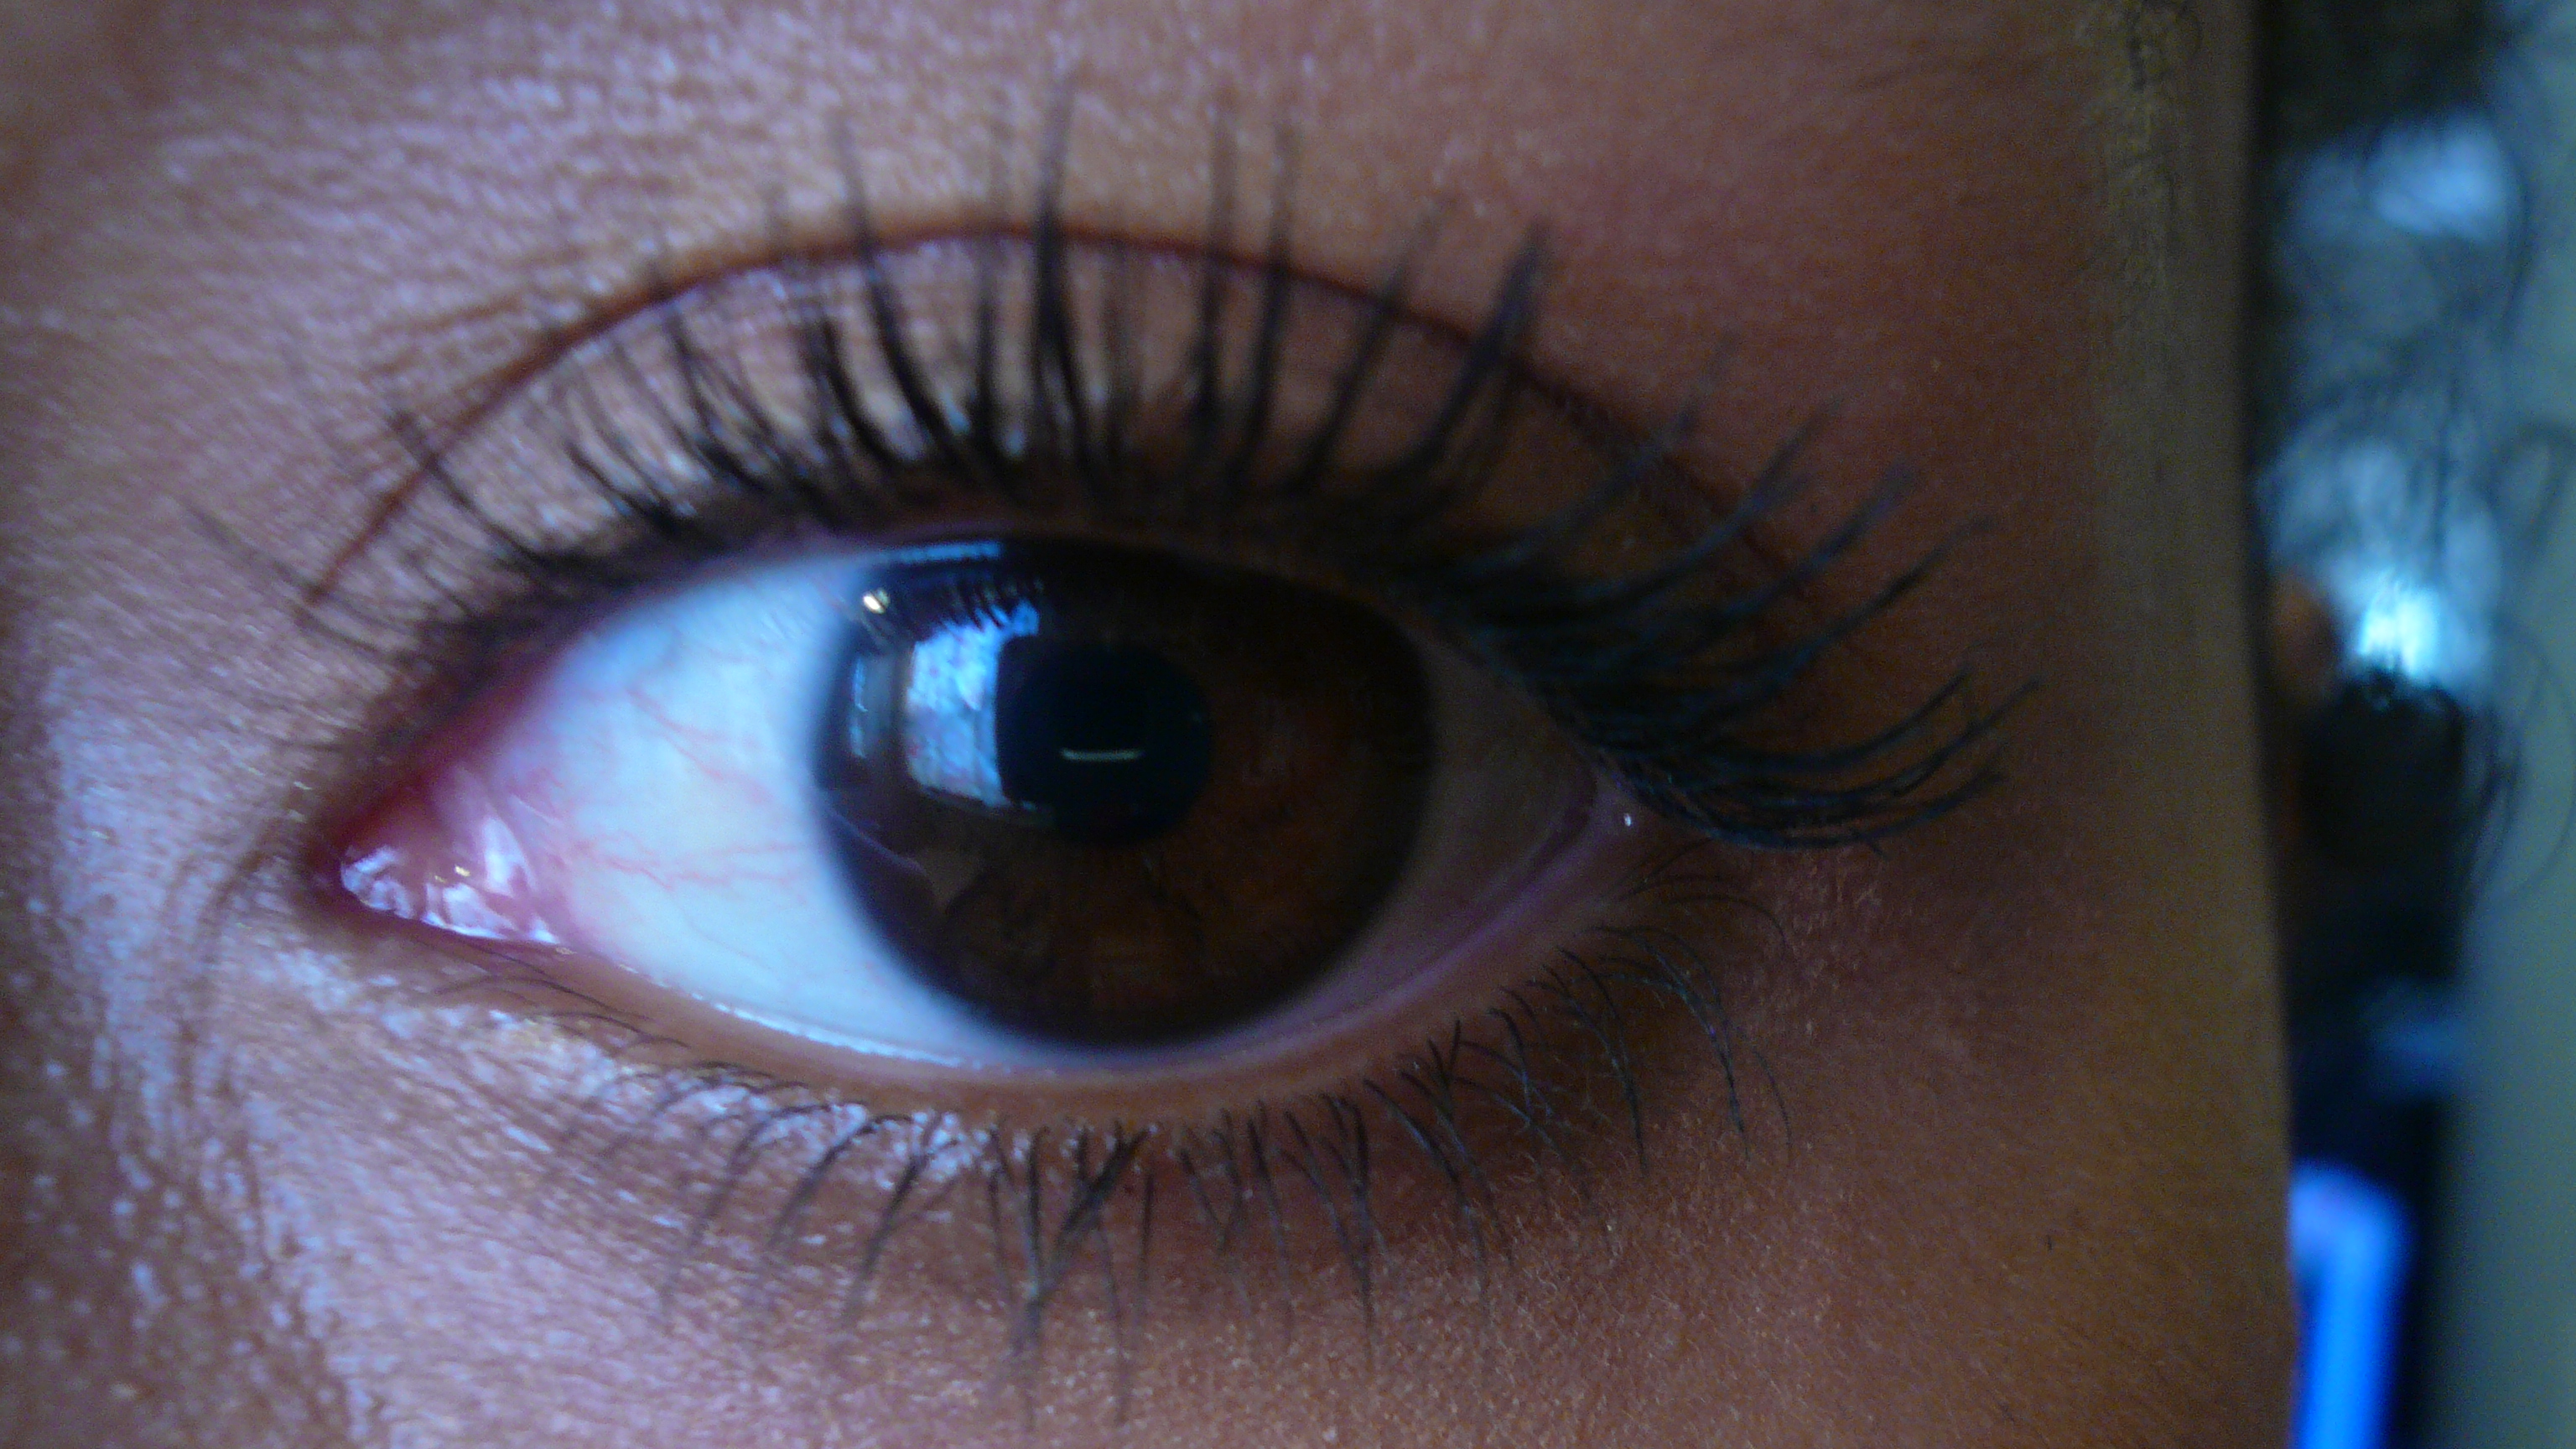 Review: Giorgio Armani's Eyes to Kill Beauty